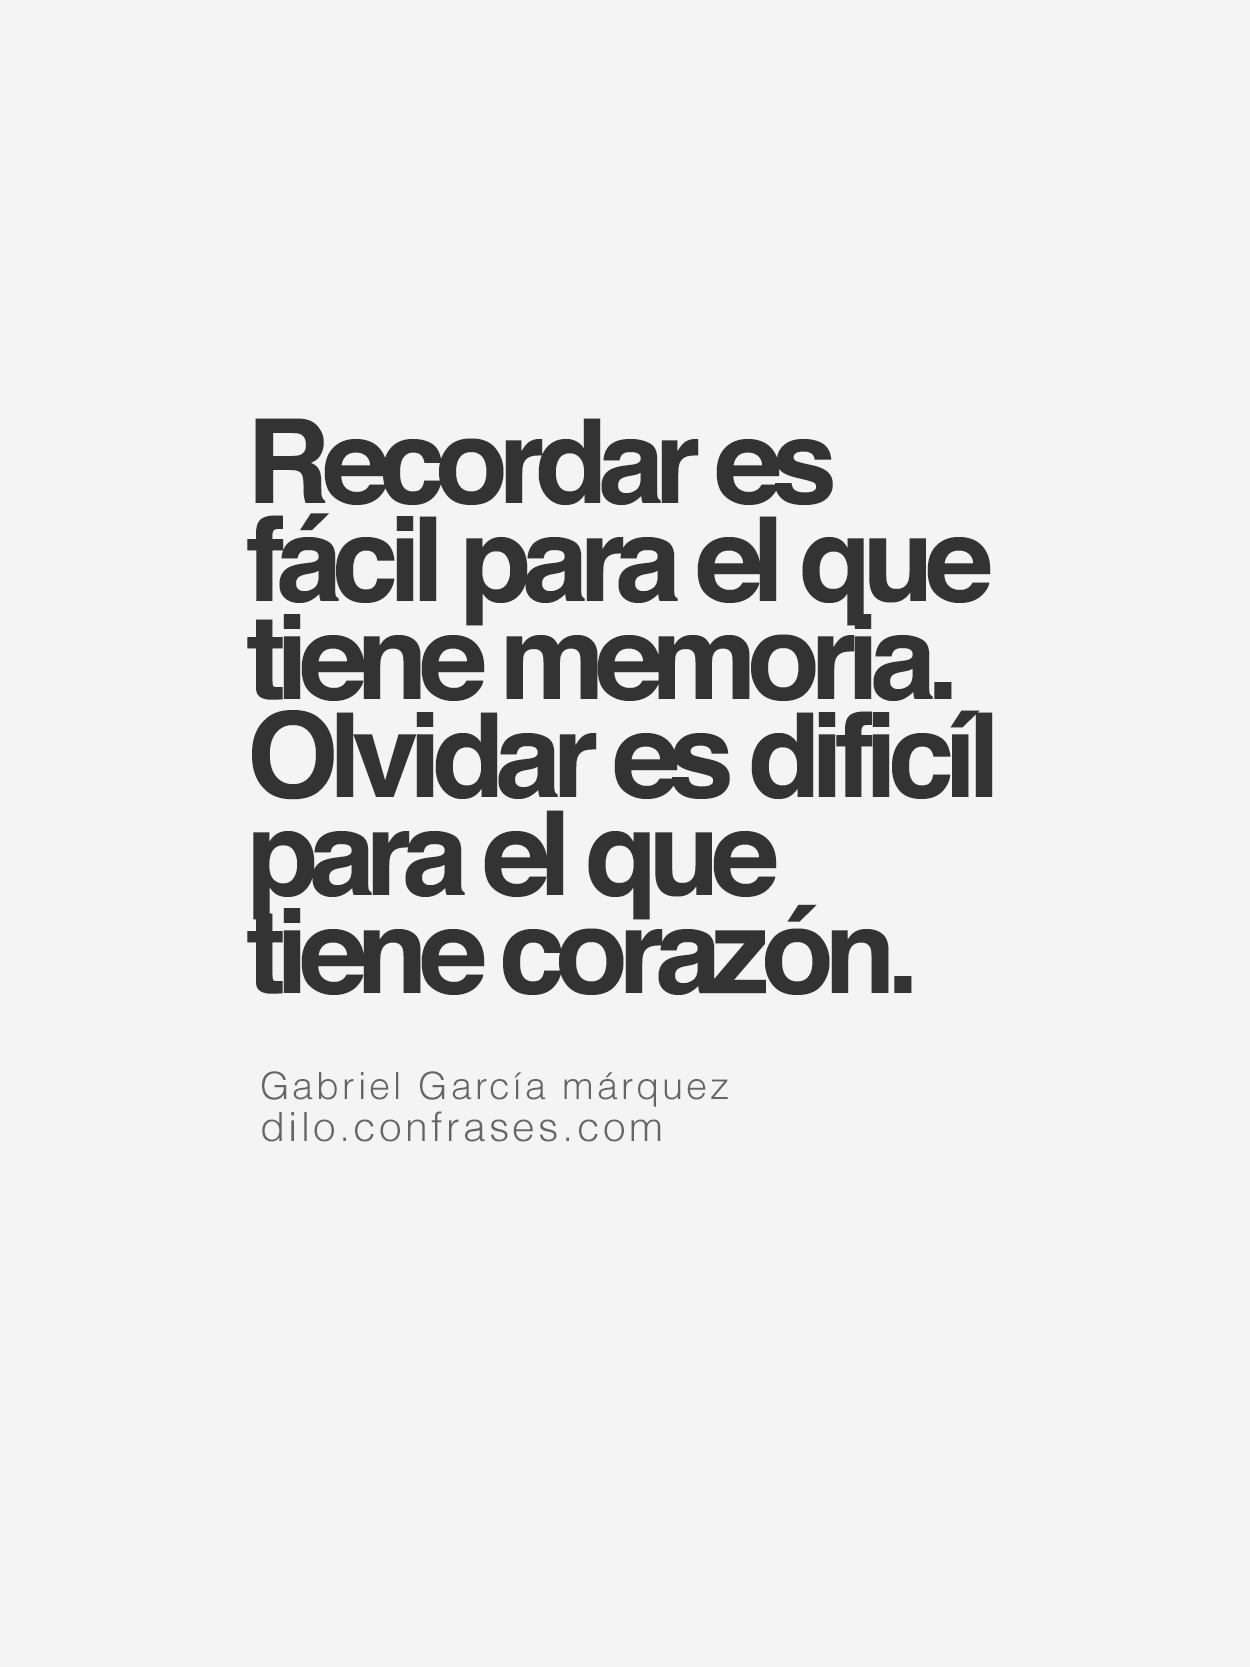  — “Recordar es fácil para el que tiene memoria....